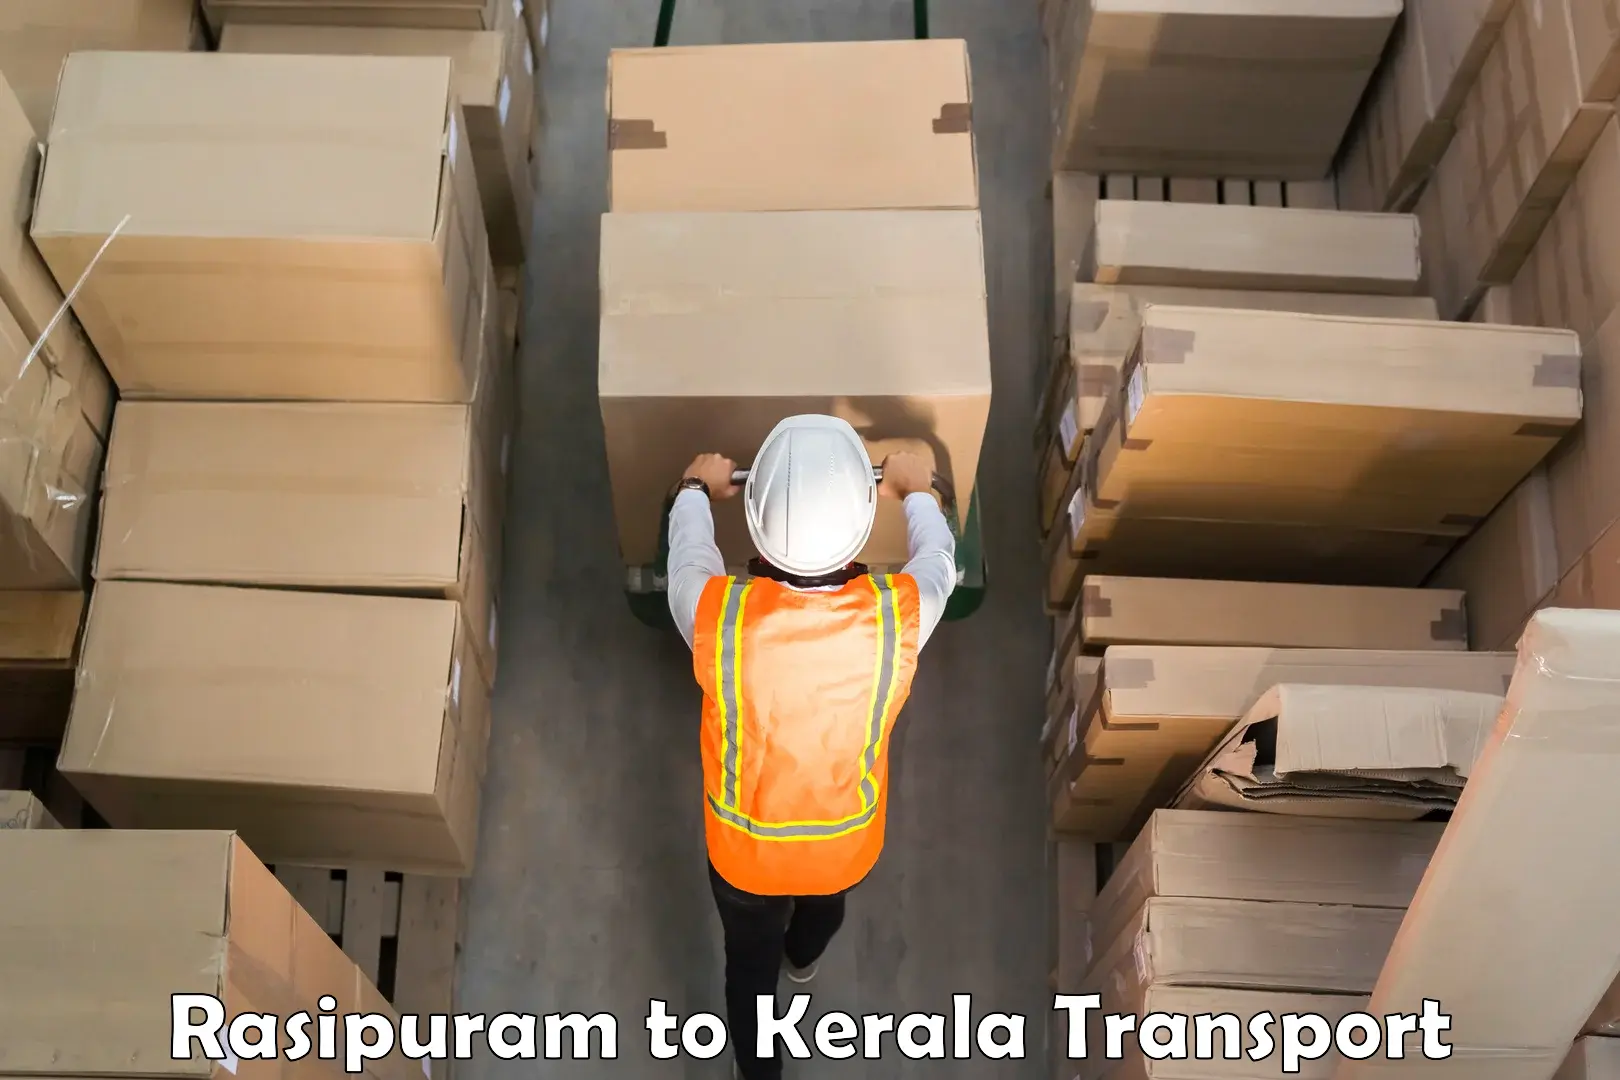 Container transport service Rasipuram to Perambra